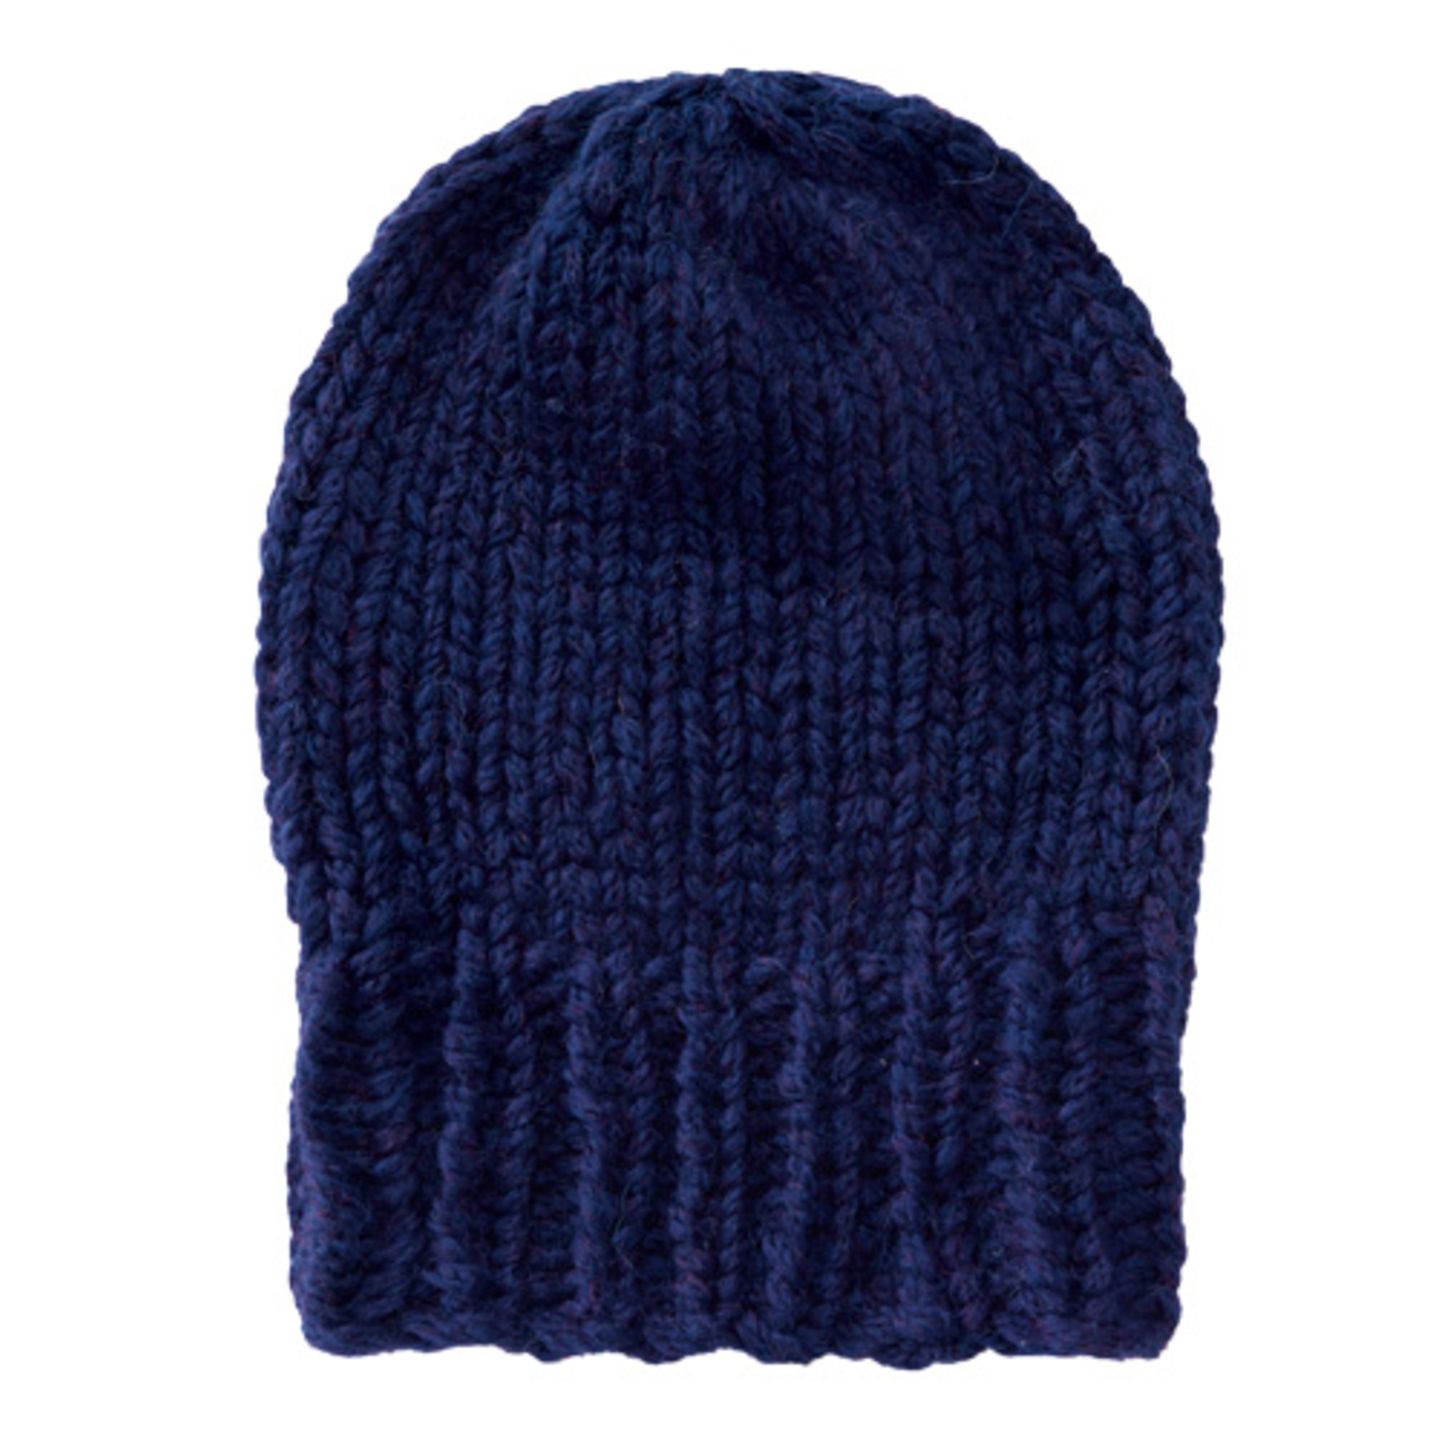 Die Mütze kann man leicht selber stricken und ist geeignet für Strick-Anfänger. Dank der Merinowolle sieht sie nicht nur schick aus, sondern hält auch kuschelig warm. 